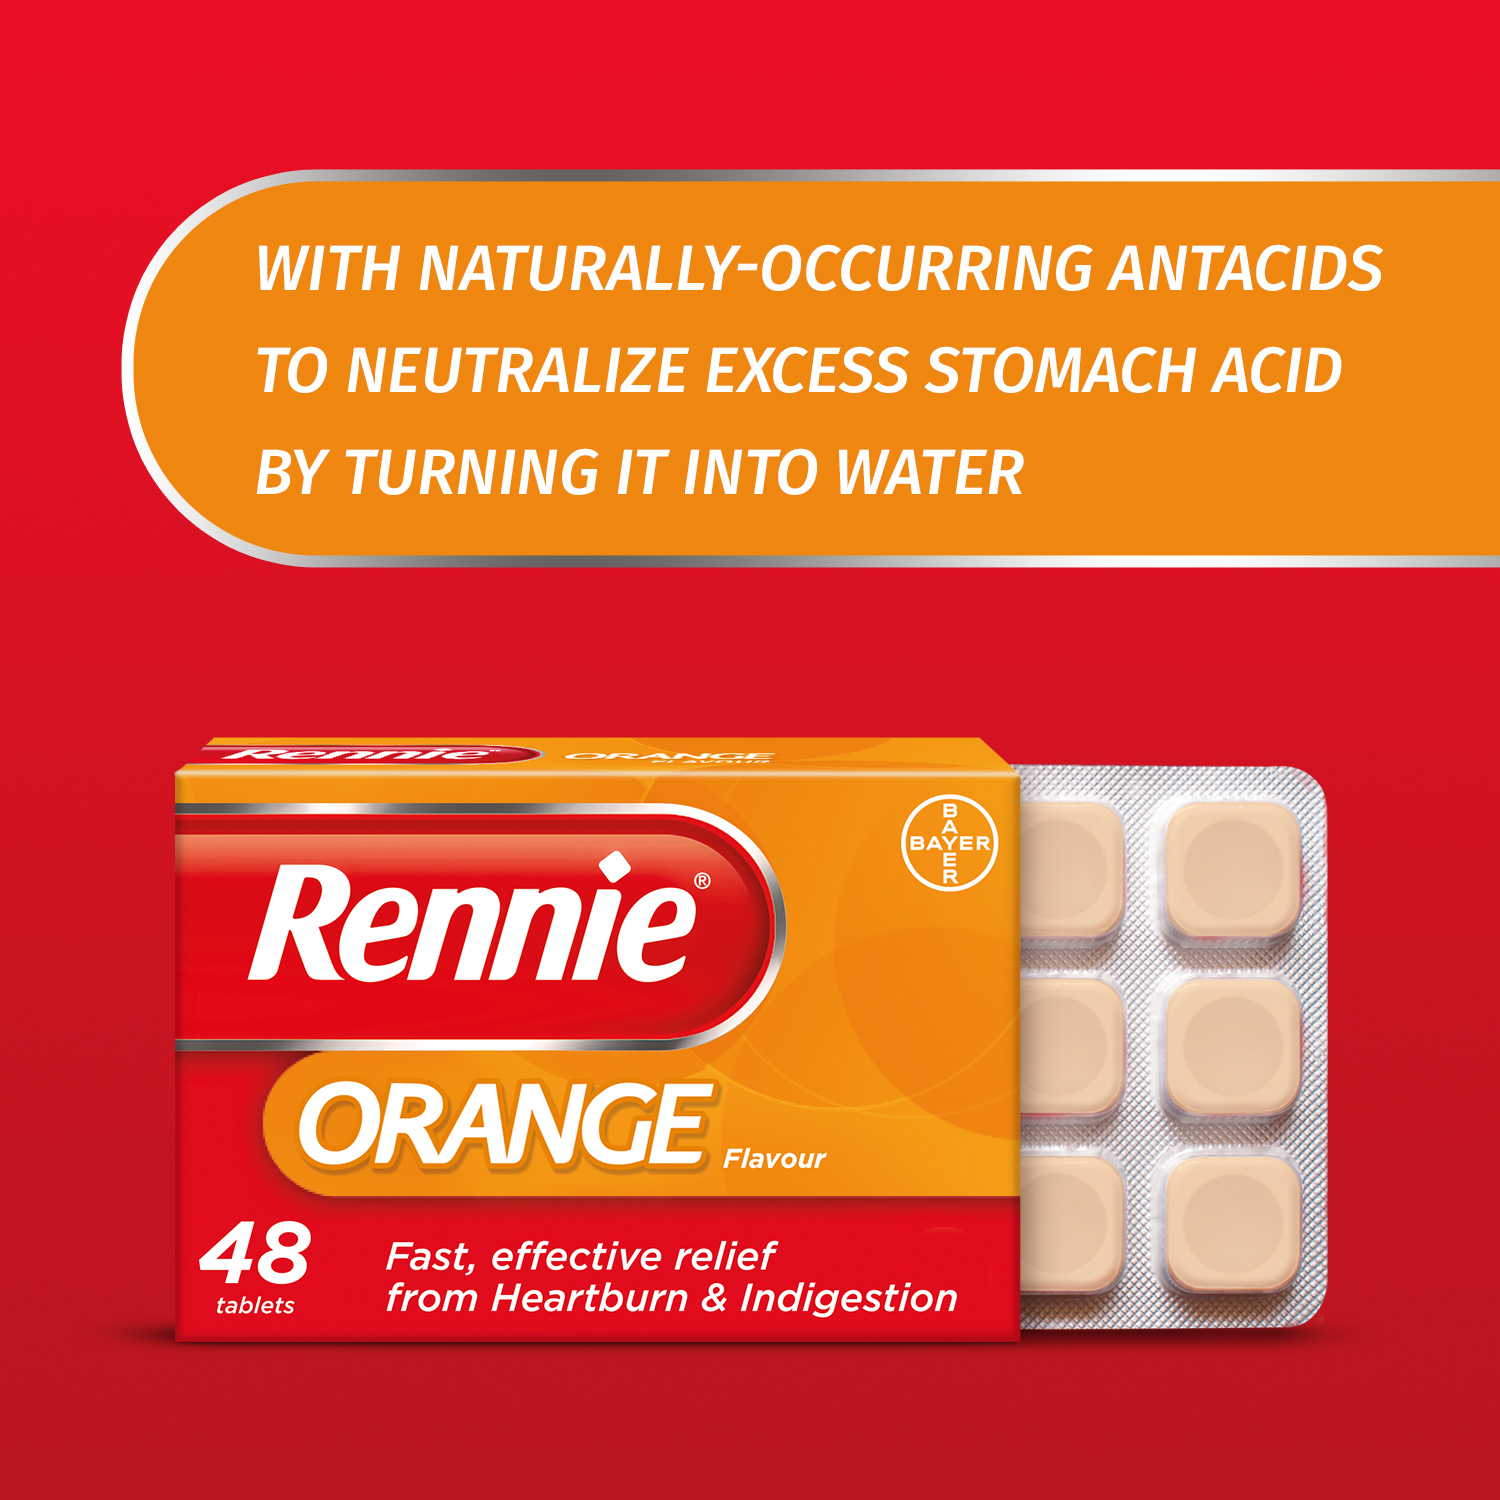 5.Bayer_eCommerce_Rennie_Orange_Ingredients